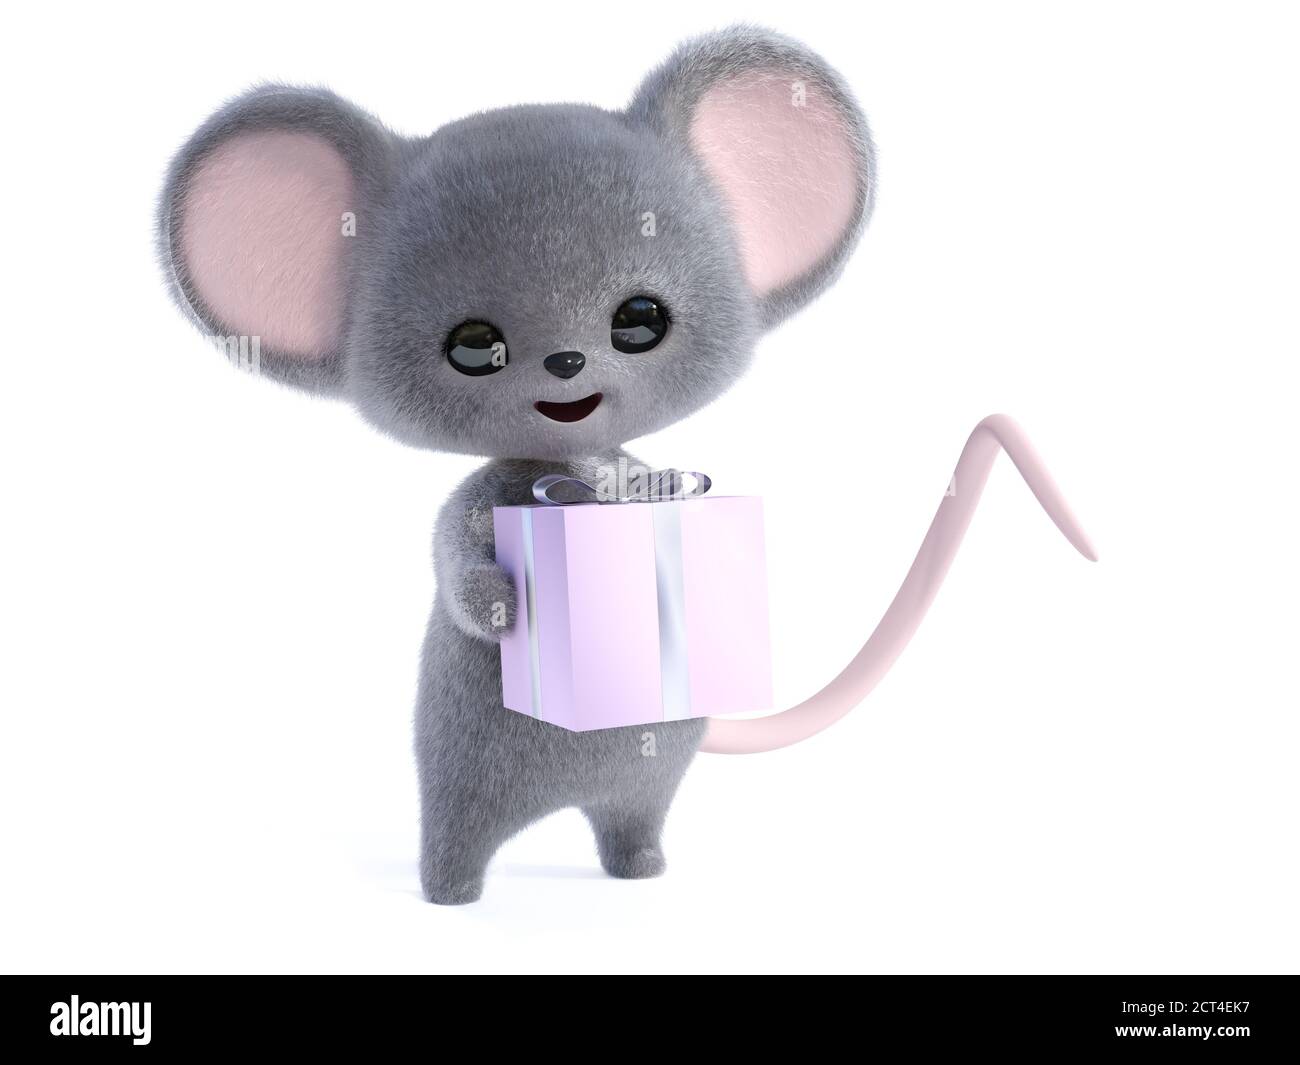 Rendu 3D d'une adorable souris à fourrure kawaii souriante tenant un cadeau d'anniversaire enveloppé dans ses mains. Arrière-plan blanc. Banque D'Images